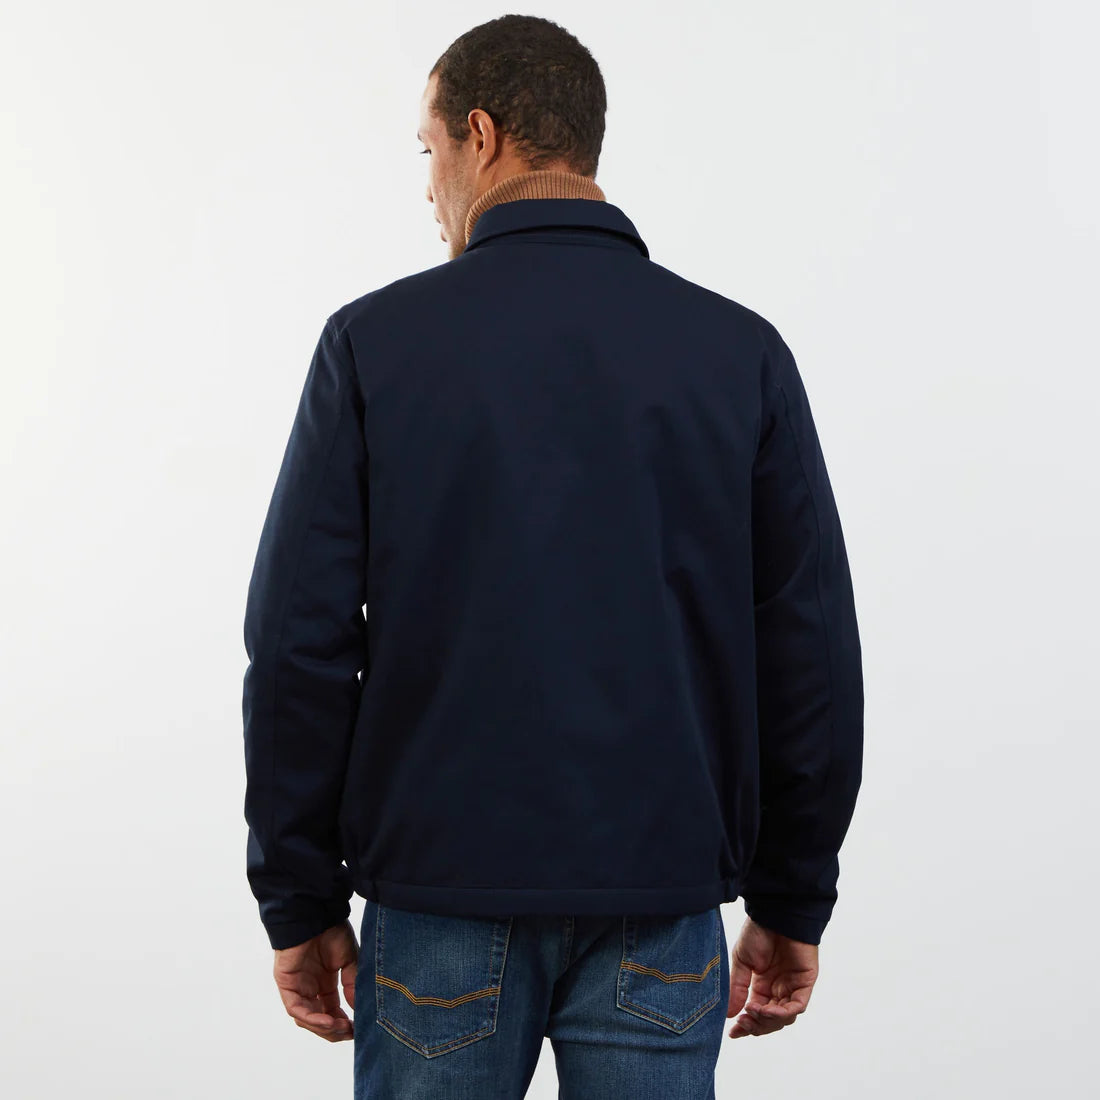 Eden Park Jackets & Coats, Dark blue jacket in cotton gabardine